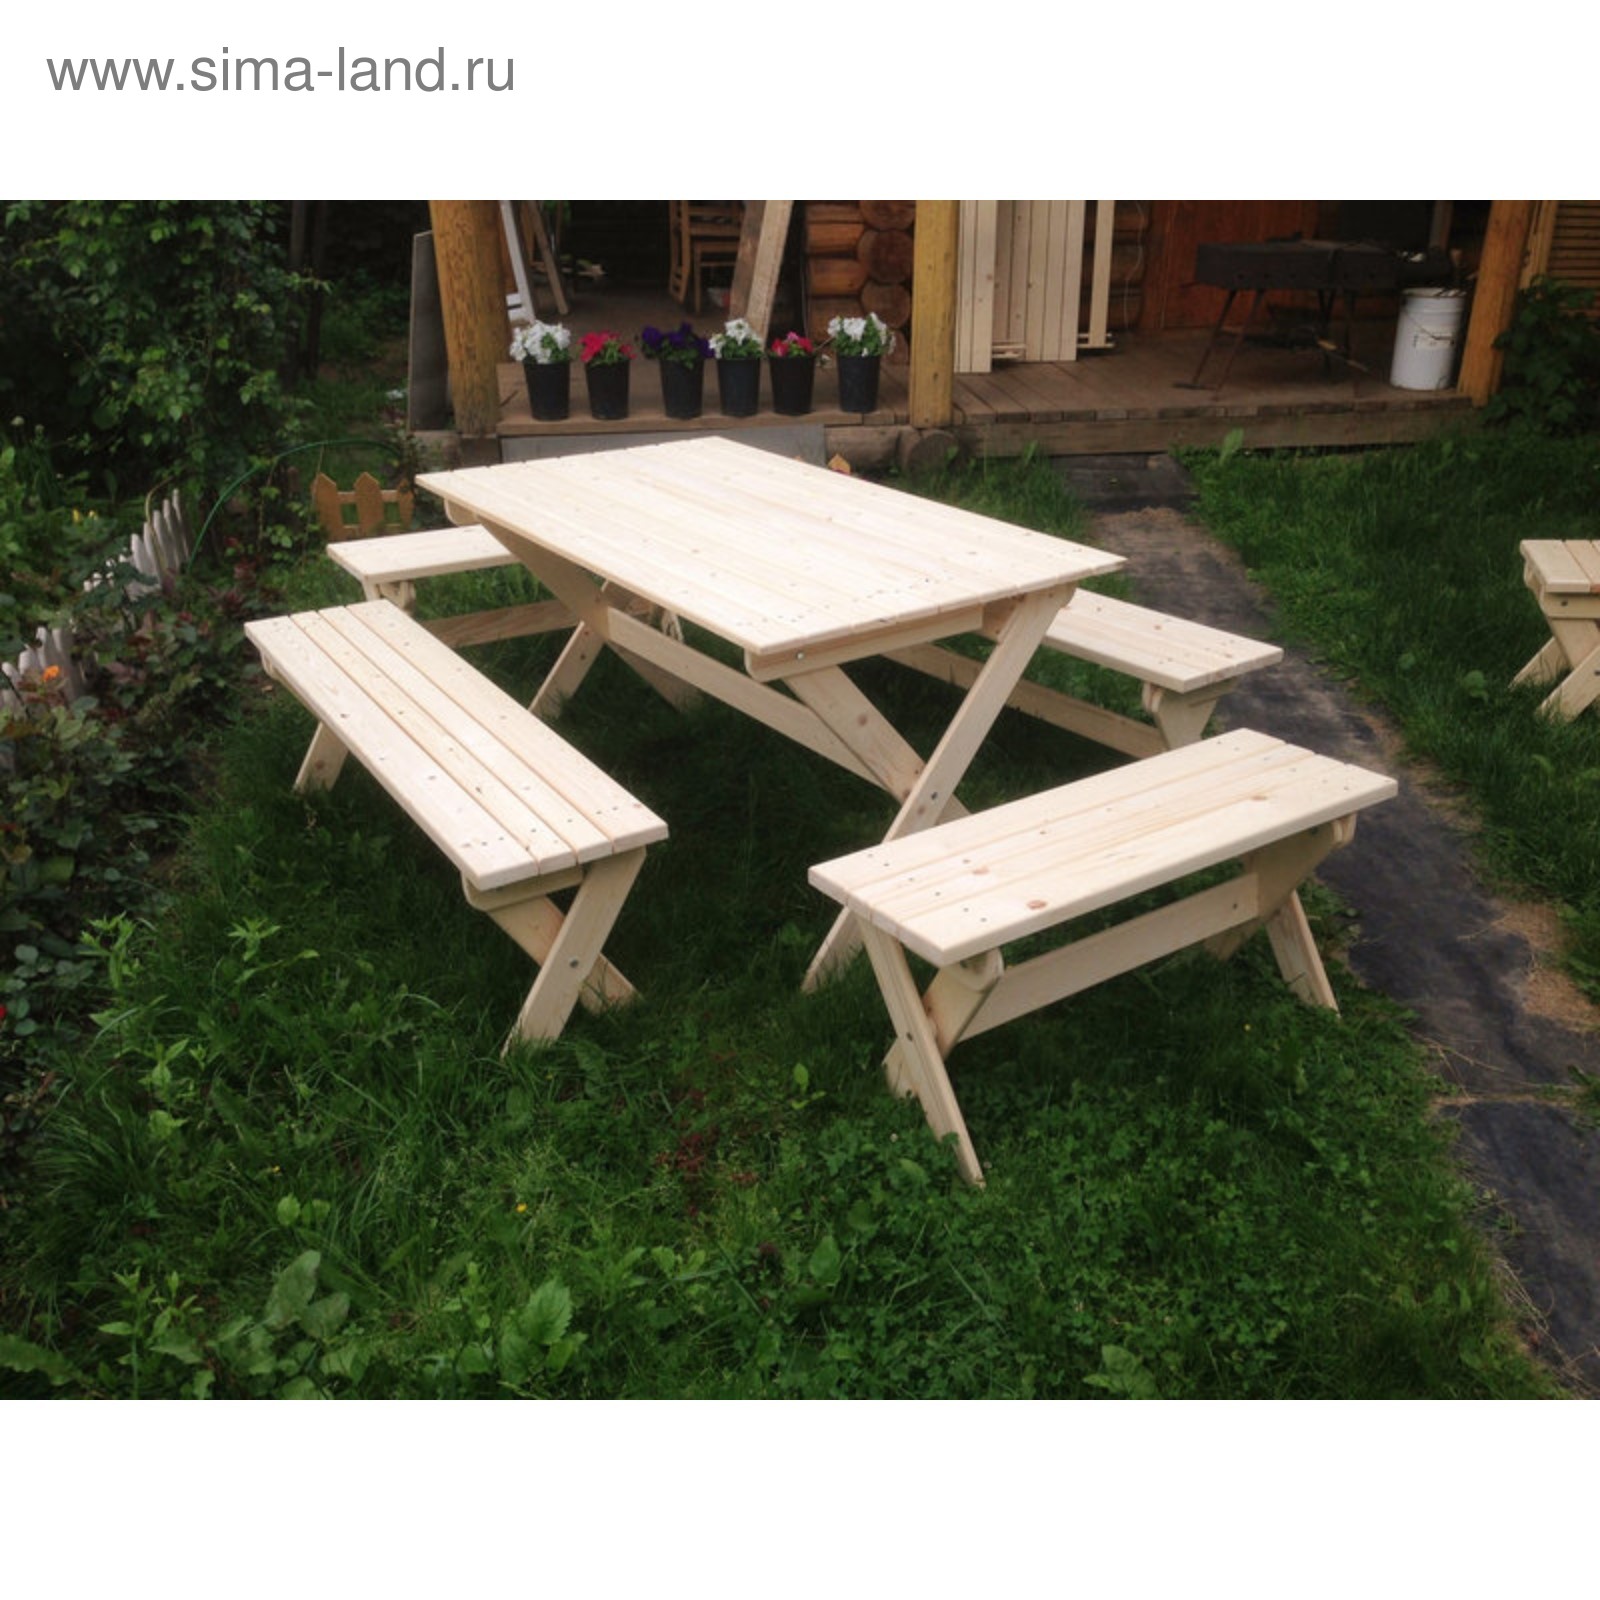 столы и скамейки для сада из дерева